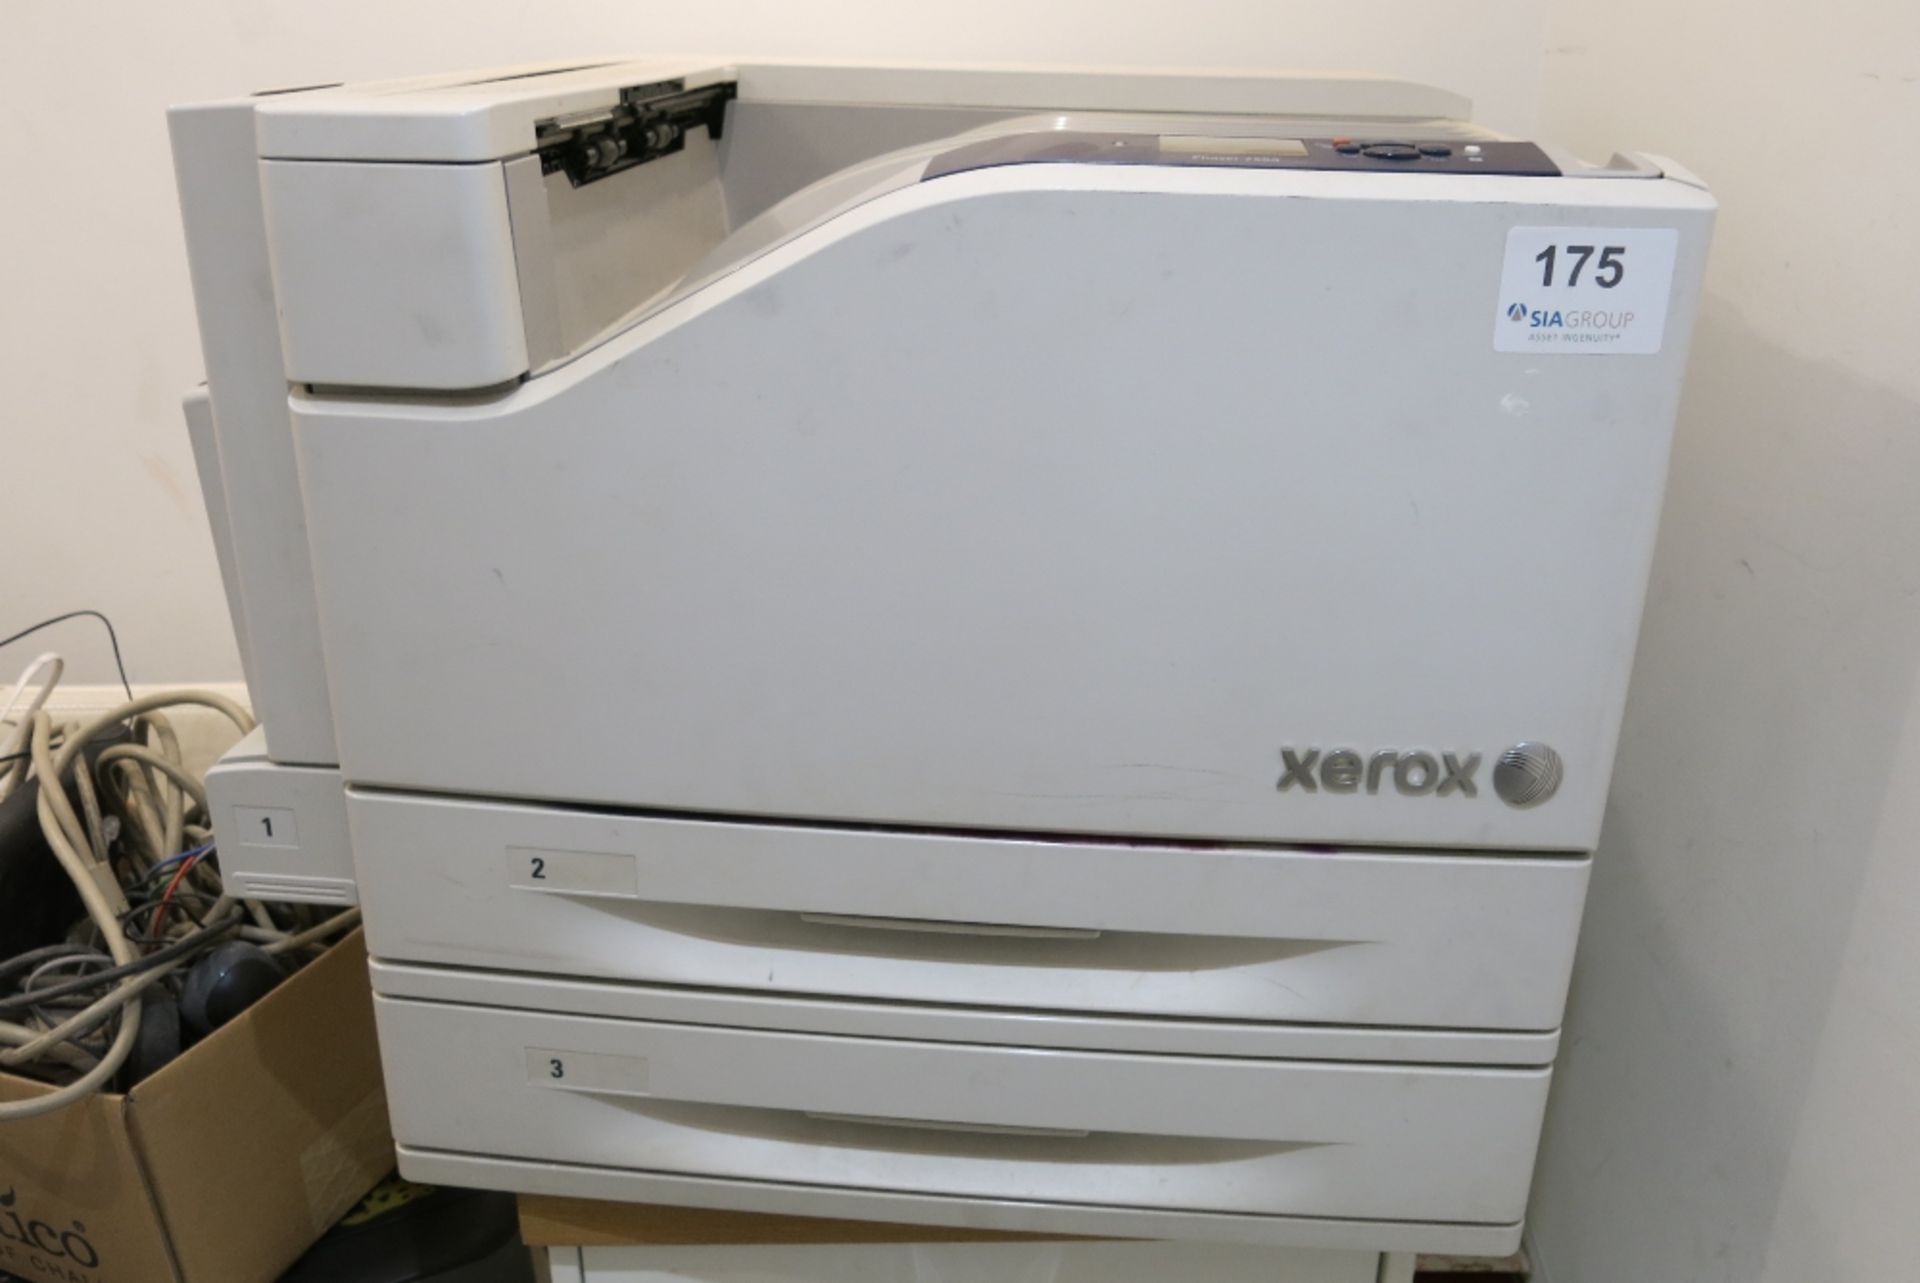 Xerox Phaser 7500 printer